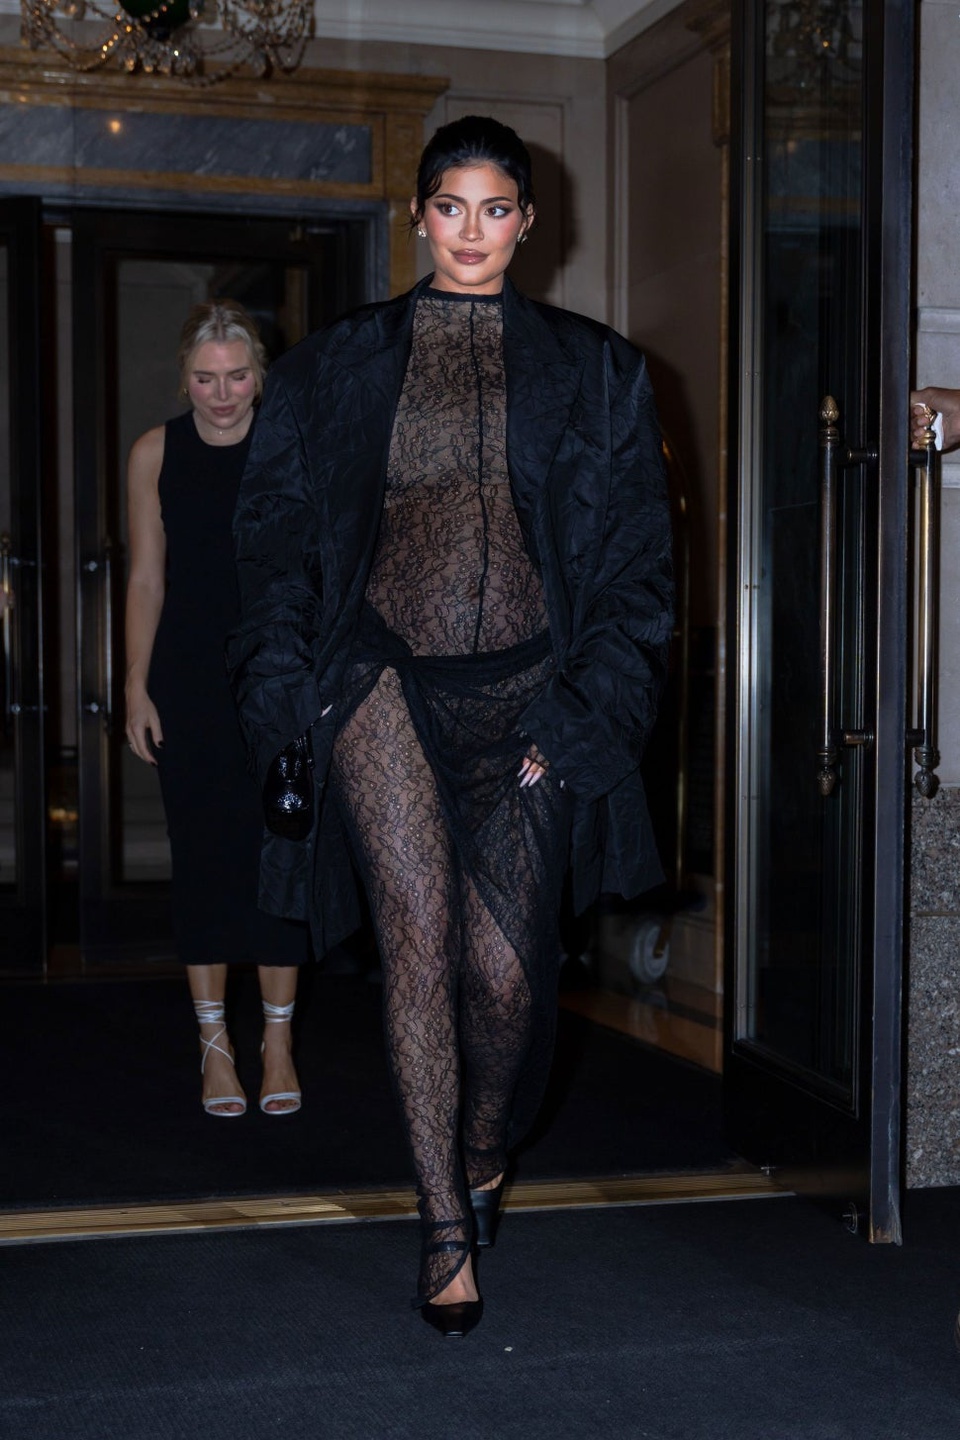 Kylie Jenner diện bộ jumpsuit ren xuyên thấu bó sát cơ thể, lộ rõ bụng bầu qua lớp vải mỏng. Người đẹp cũng mặc kèm áo blazer oversize